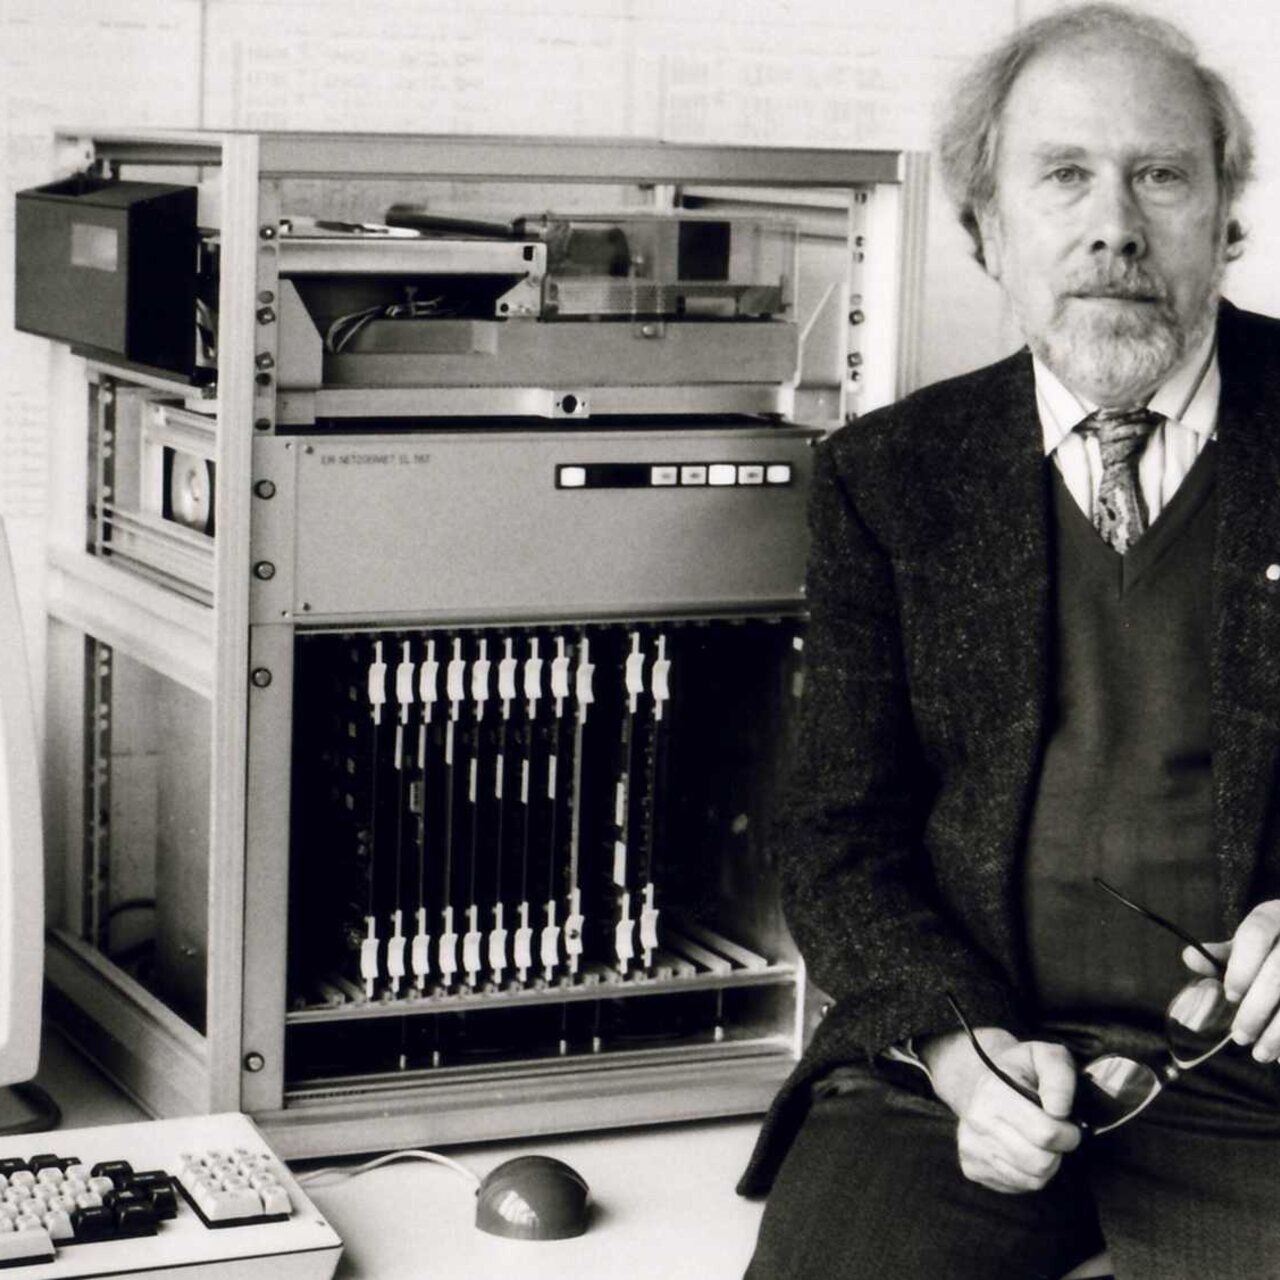 Niklaus Wirth: vinse il prestigioso Premio Turing nel 1984